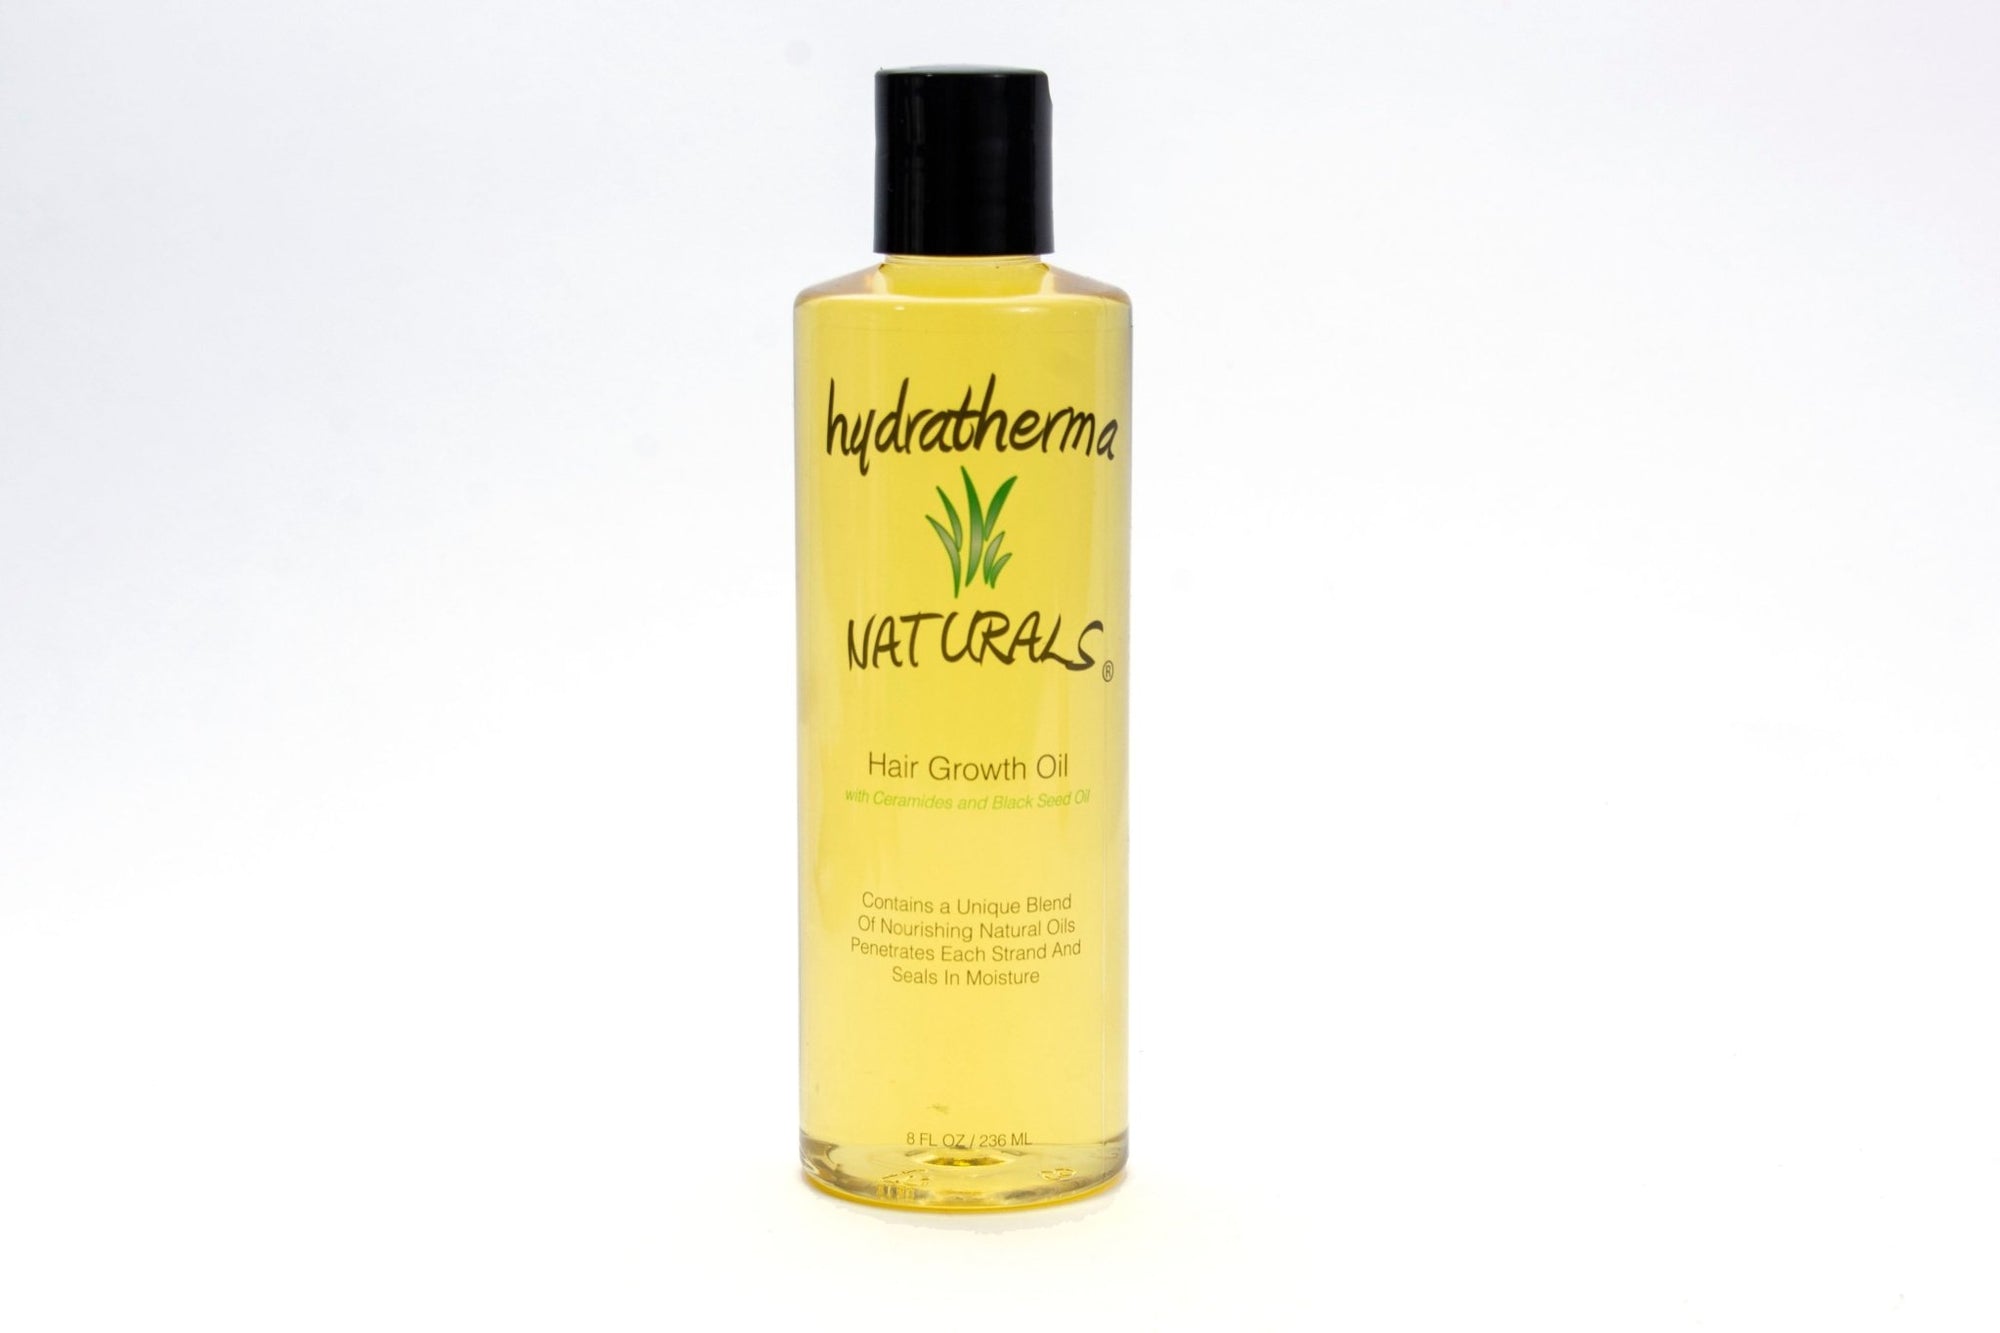 Hair Growth Oil - HydrathermaNaturalsHair Growth OilHydrathermaNaturals